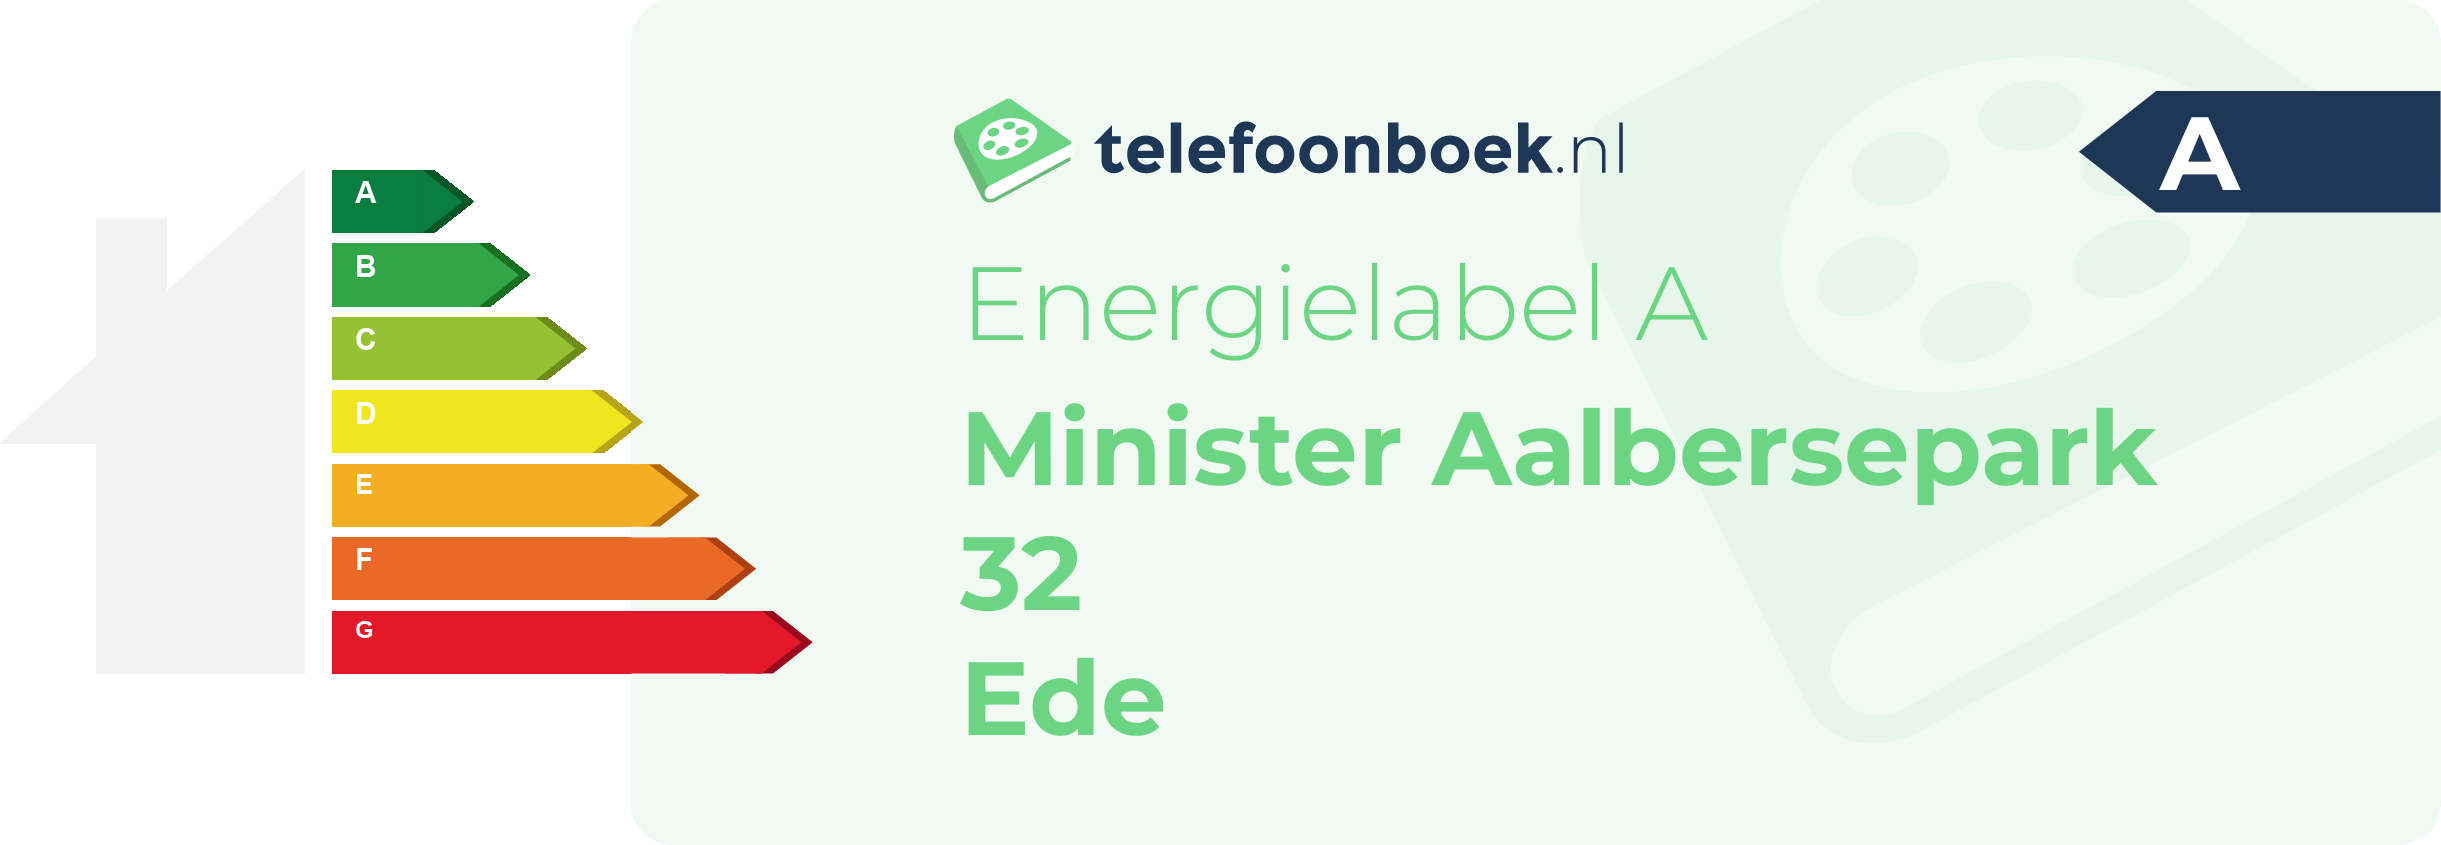 Energielabel Minister Aalbersepark 32 Ede